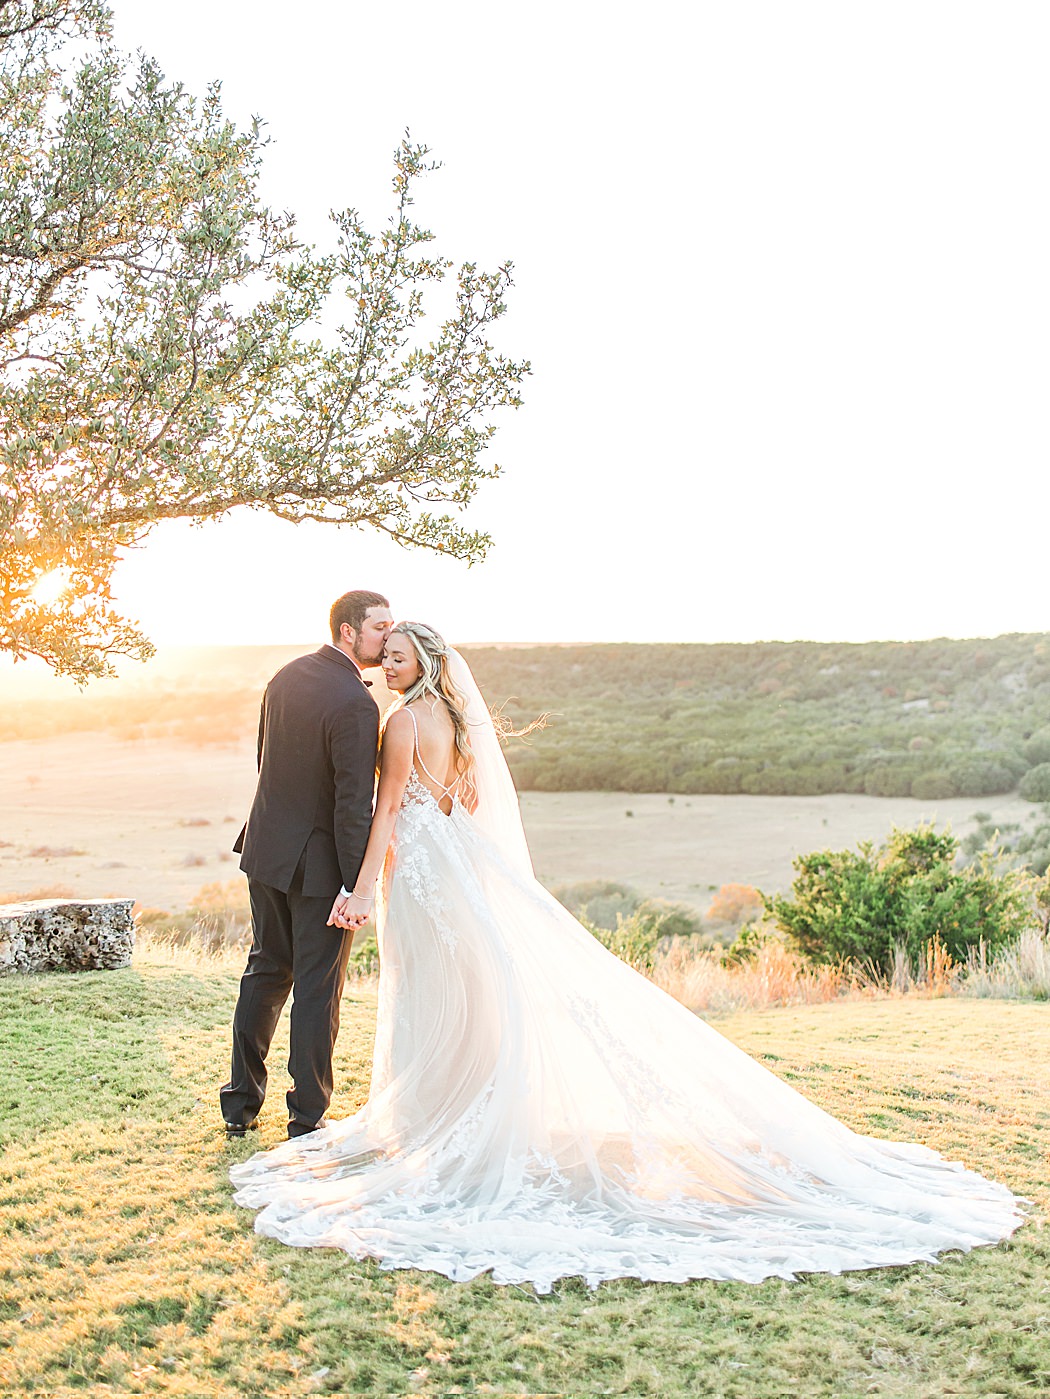 A Grey and Peach Fall Wedding at Contigo Ranch in Fredericksburg Texas by Allison Jeffers Photography 00049